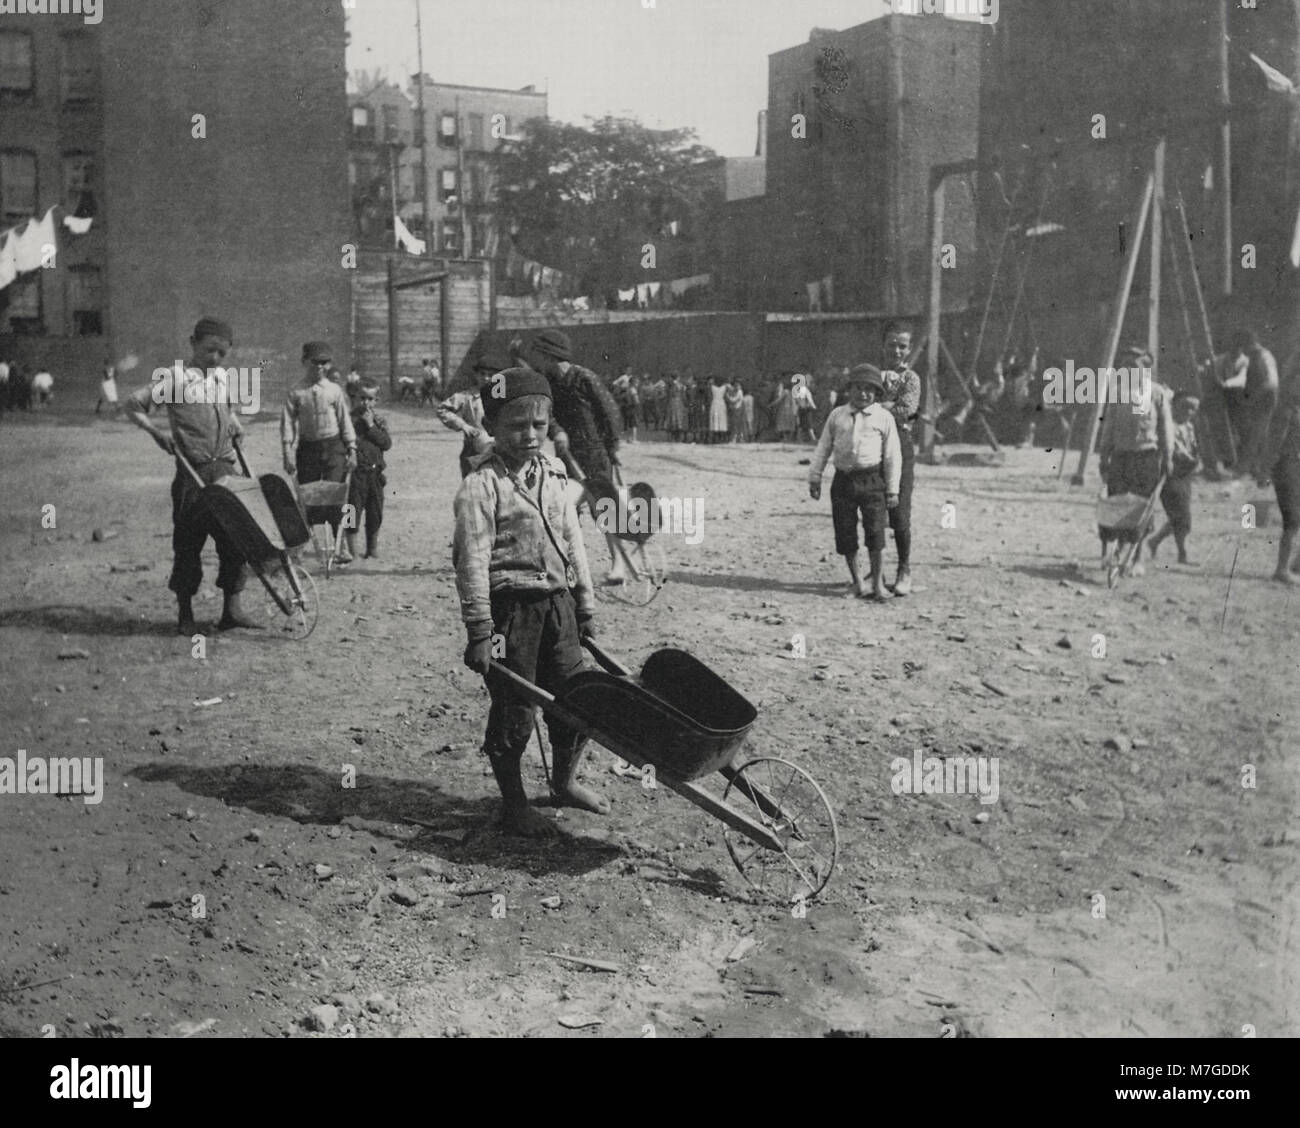 Riis, Jacob A. - Kinder aus einem Armenviertel in Coney Island spielen (Zeno Fotografie) Stock Photo